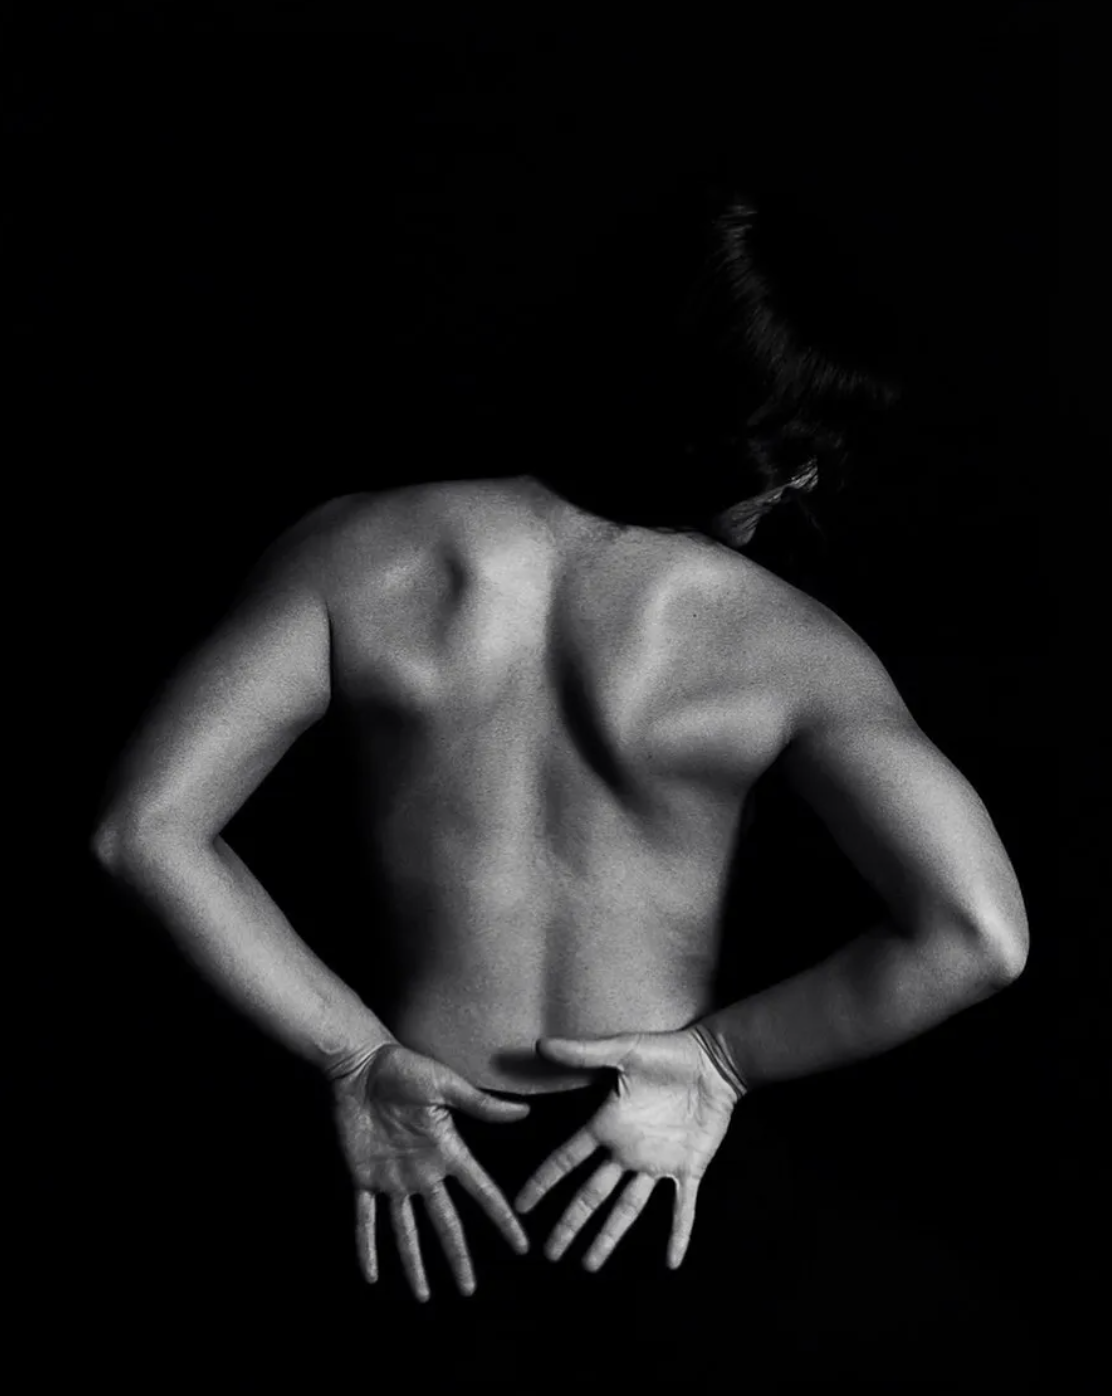 _Emotion Through The Body_ by Angela Fernandez